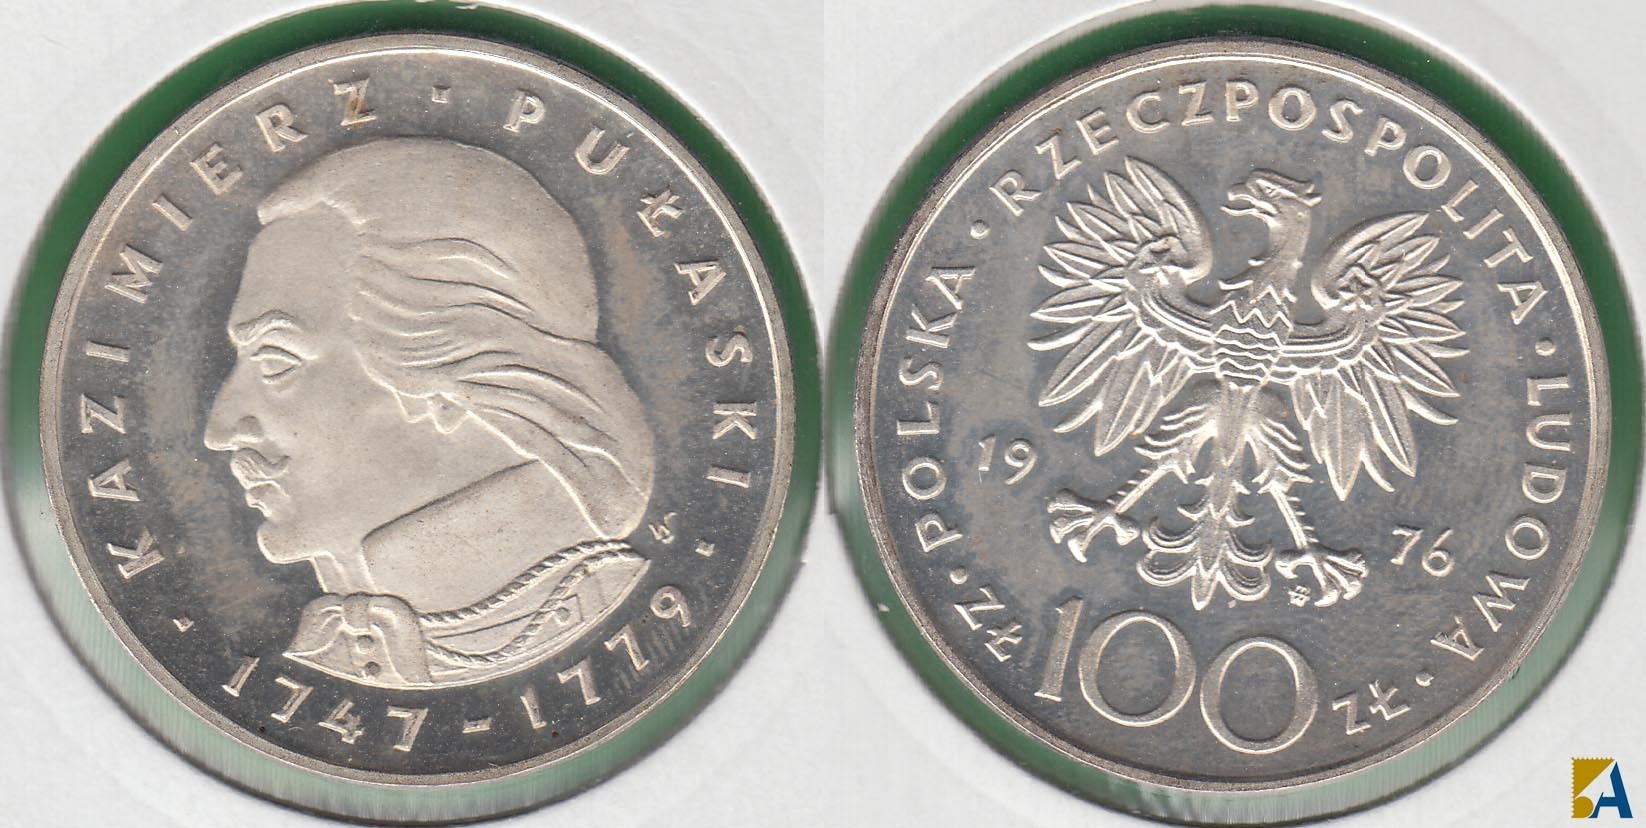 POLONIA - POLSKA. 100 ZLOTYCH DE 1976. PLATA 0.625. (2)